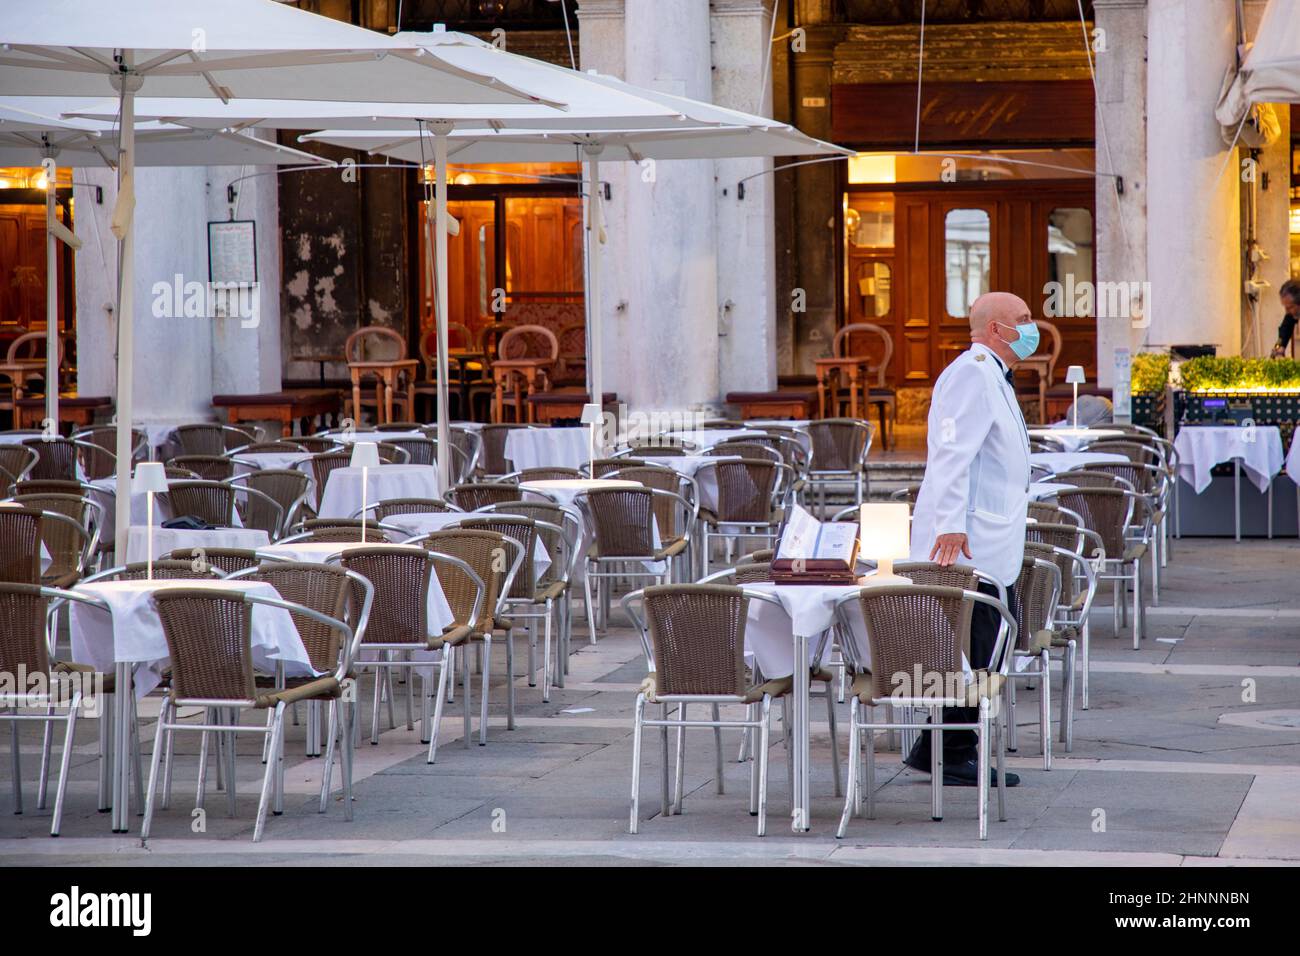 Il cameriere attende i clienti al famoso caffè Floria in Piazza San Marco a Venezia. Indossa una maschera facciale per proteggere l'agsinst covid 19 Foto Stock